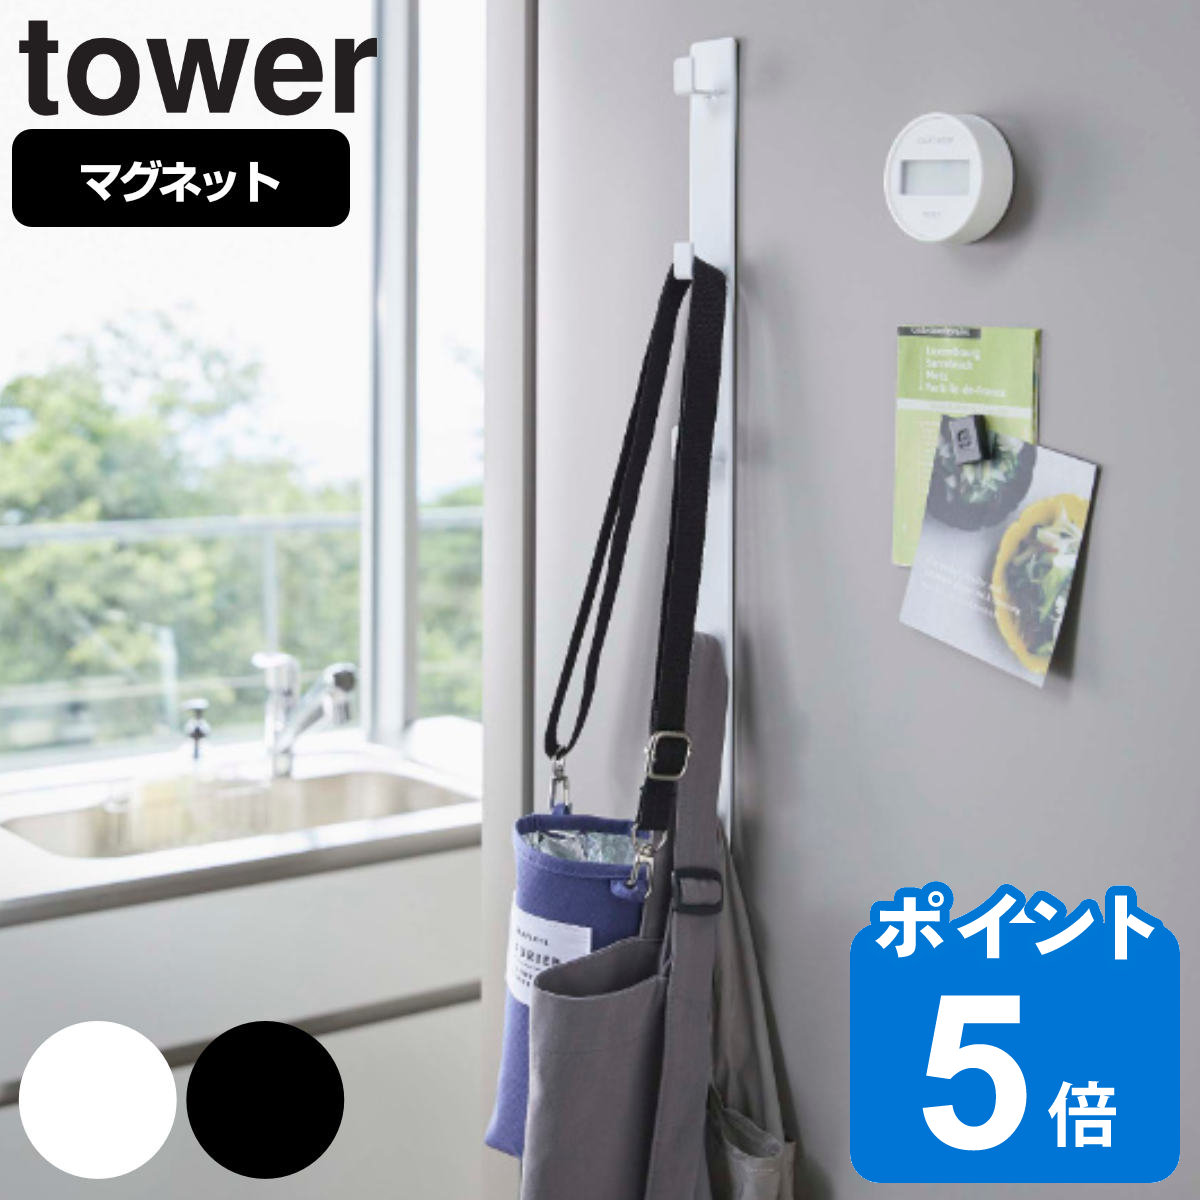 tower マグネット冷蔵庫サイド縦型5連フック タワー